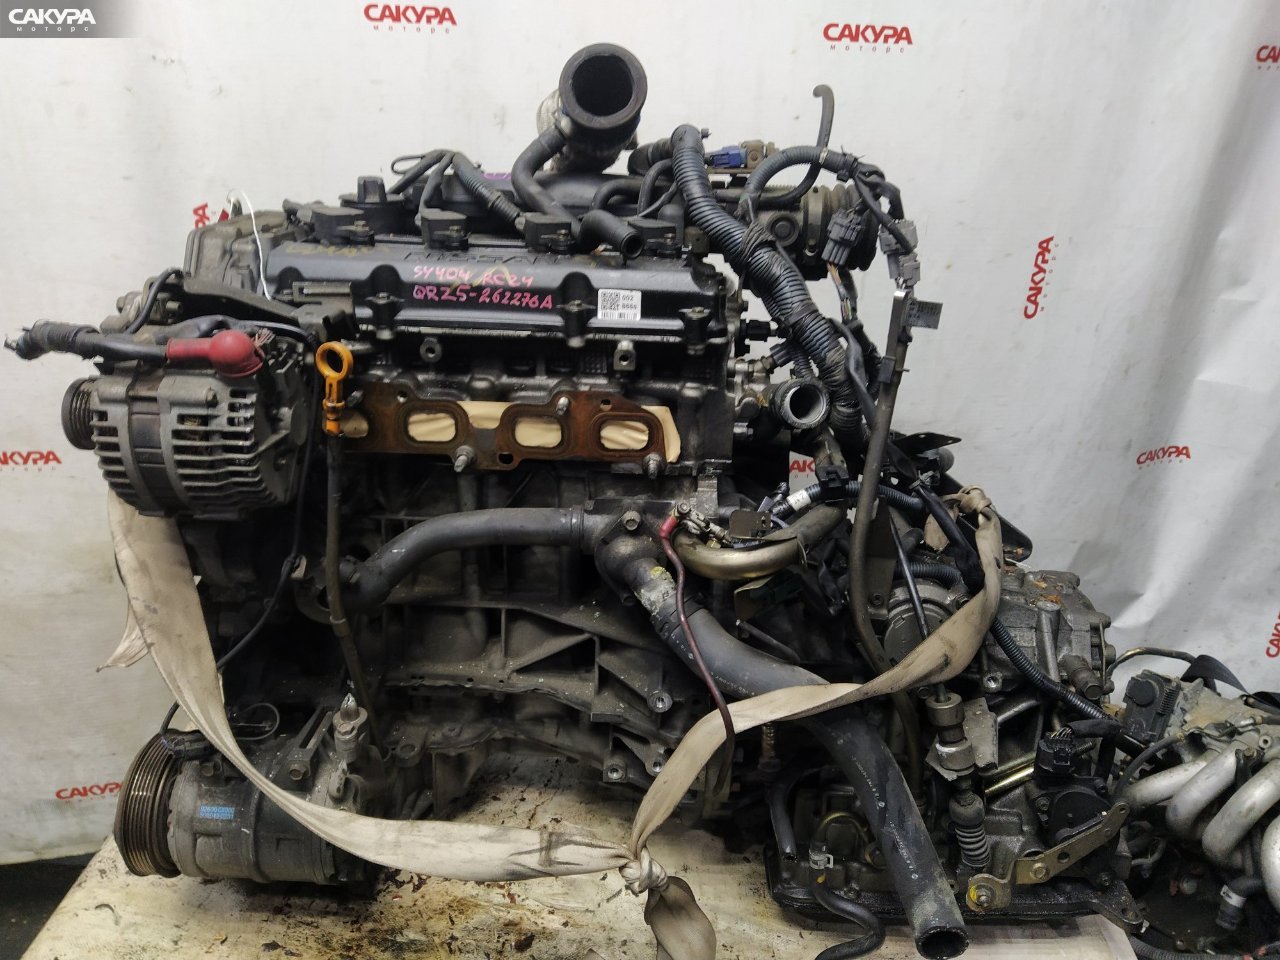 Двигатель Nissan Serena RC24 QR25DE: купить в Сакура Красноярск.